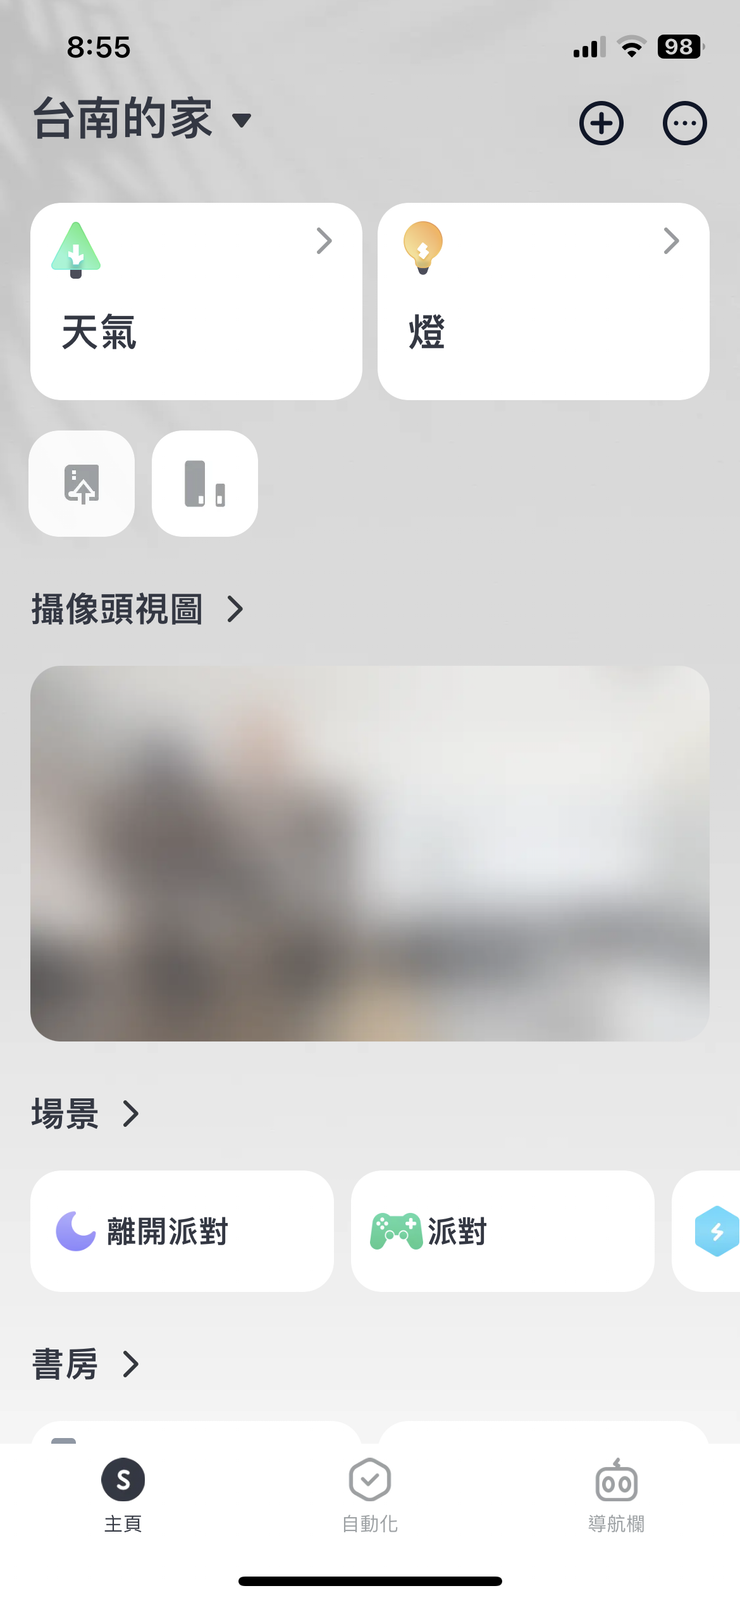 app 中首頁會出現攝影機的御覽圖